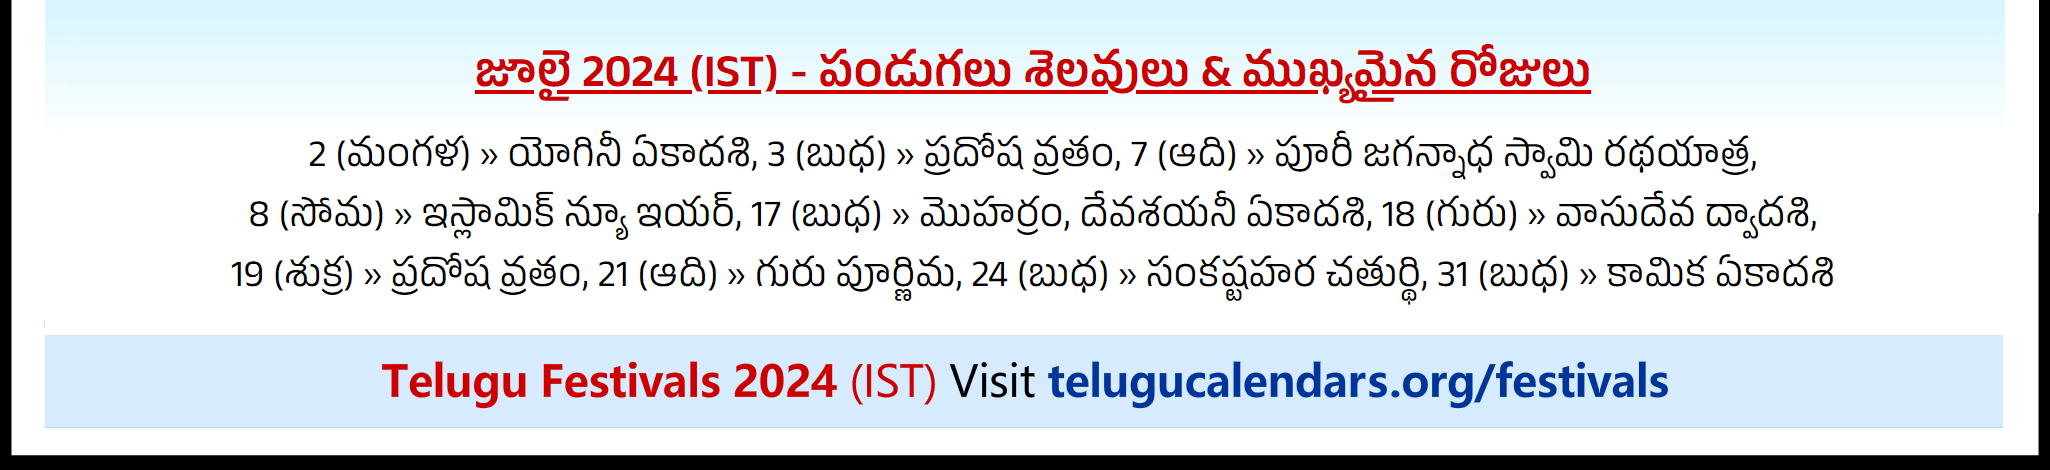 Telugu Festivals 2024 July Chicago